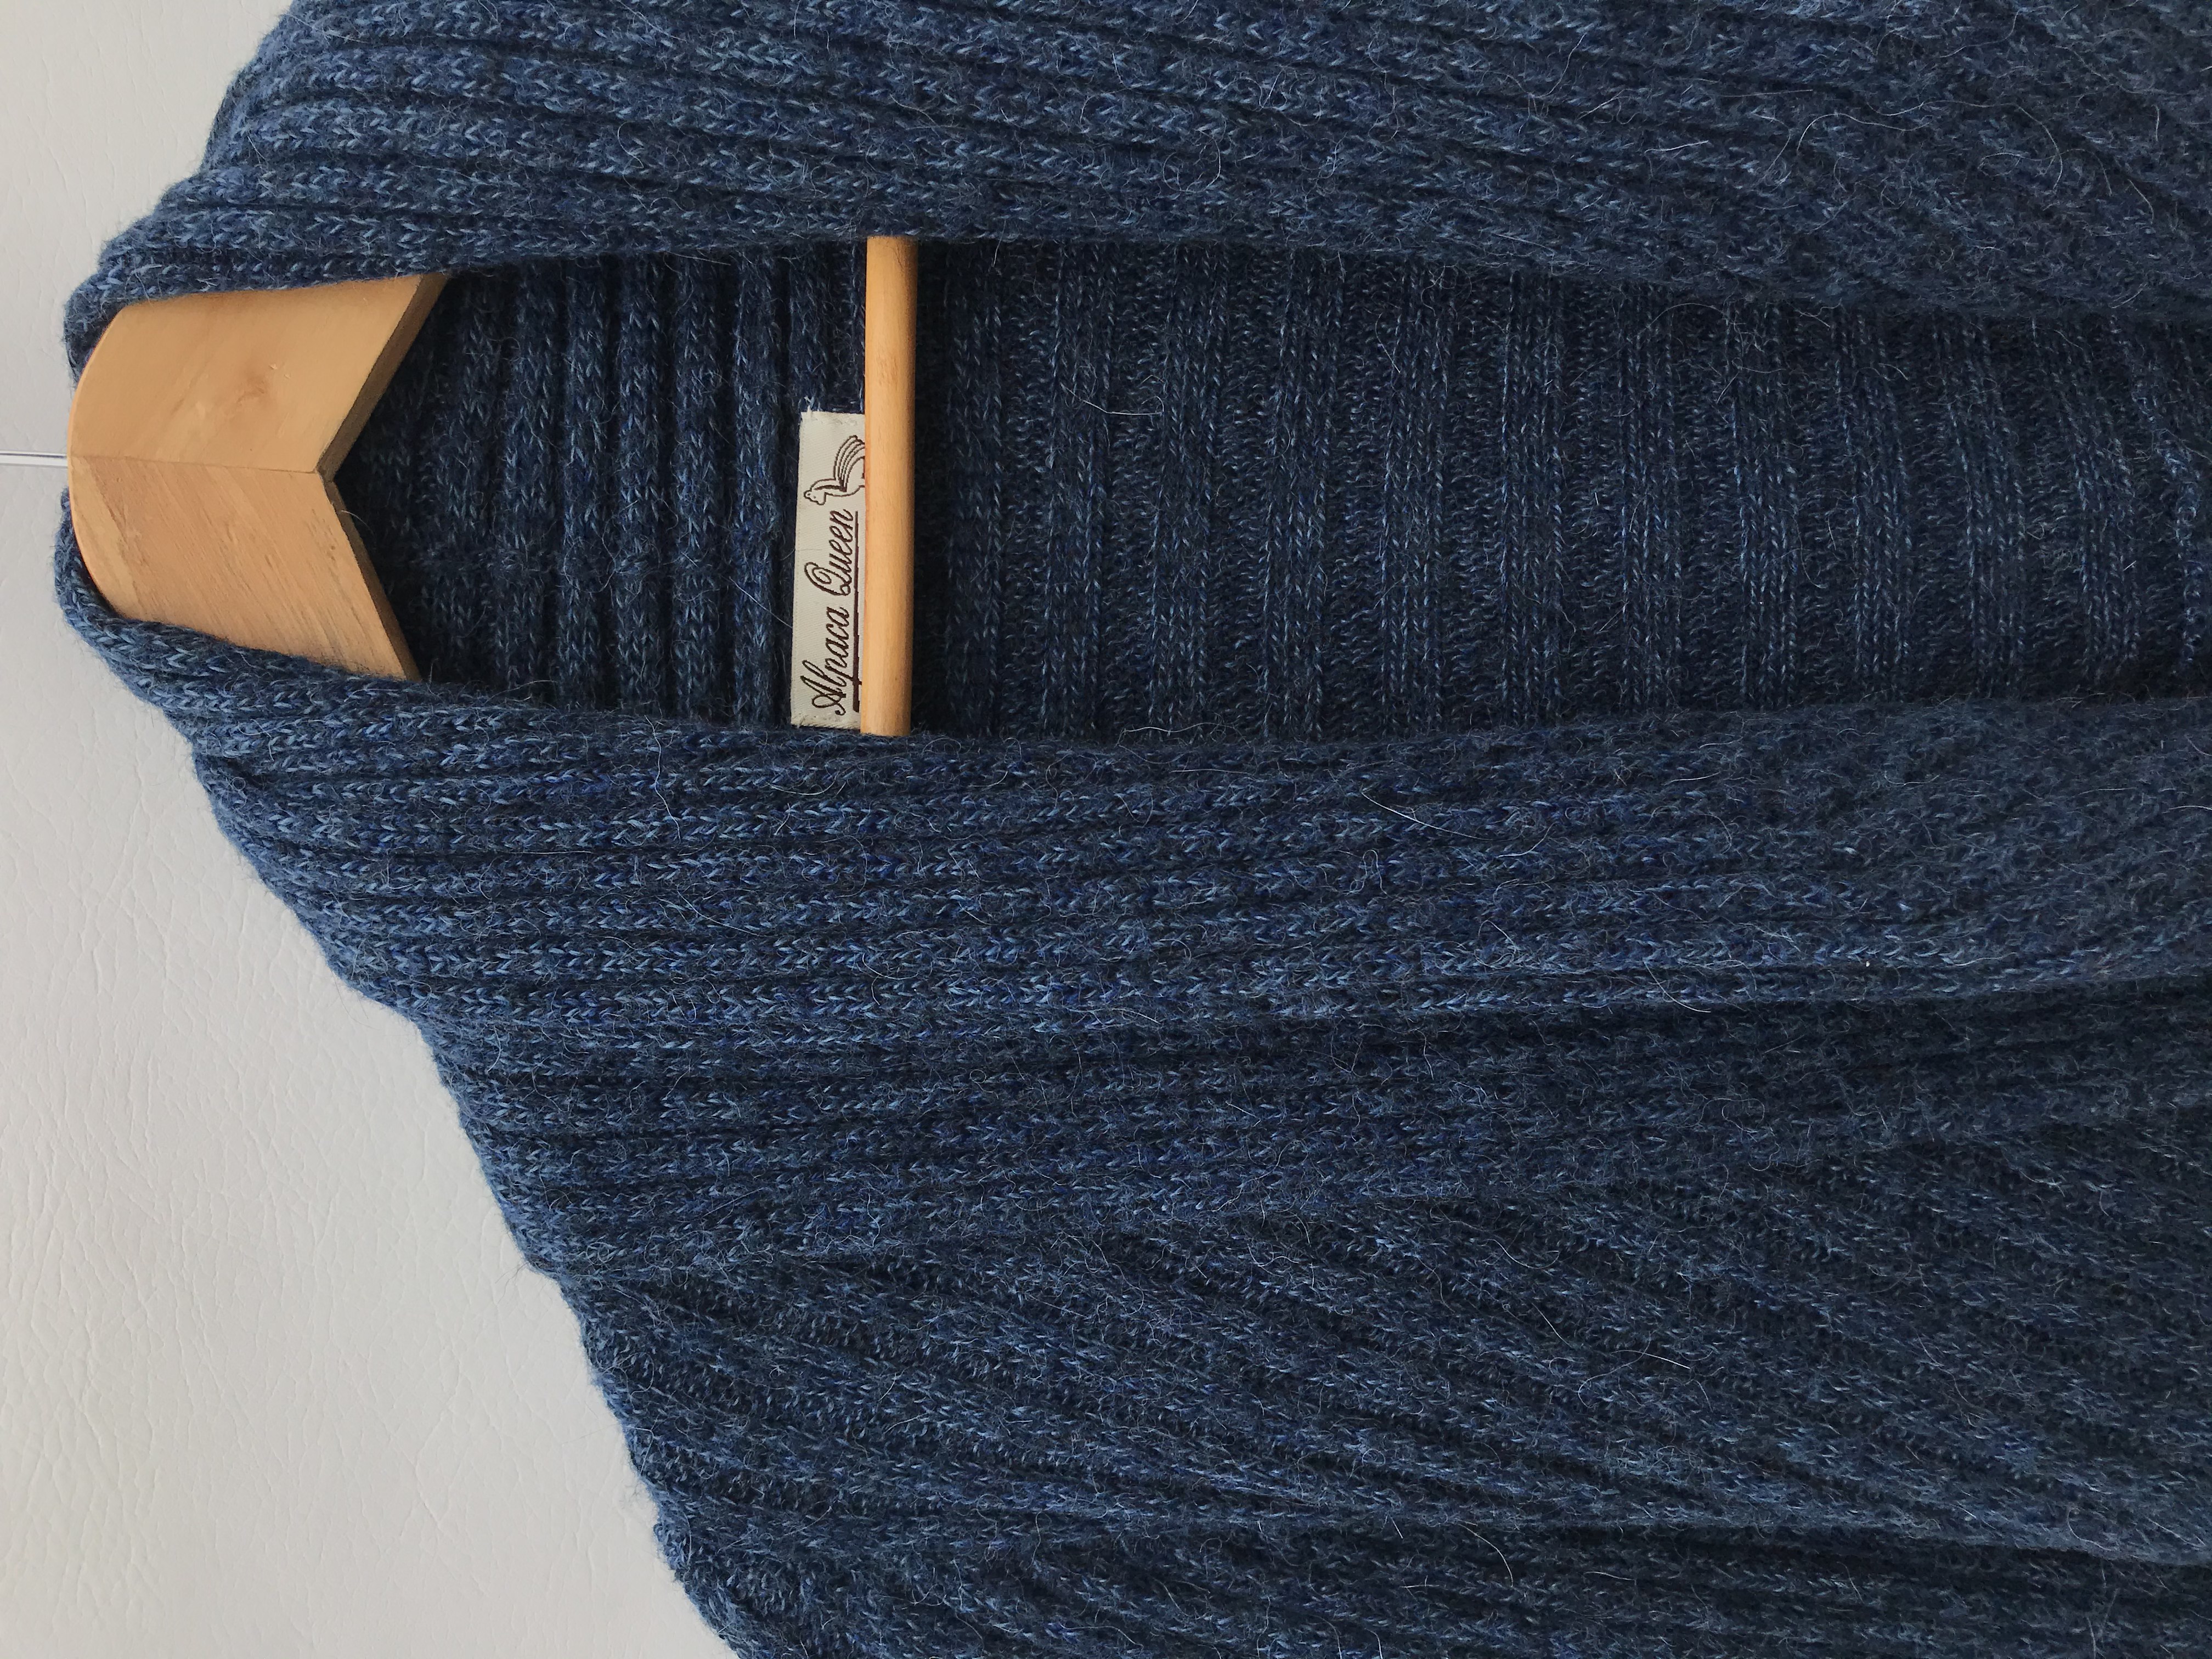 Cardigan largo mezcla de alpaca azul jaspeado con textura tipo acanalado grueso, modelo circular con cuello para doblar y bastas redondeadas